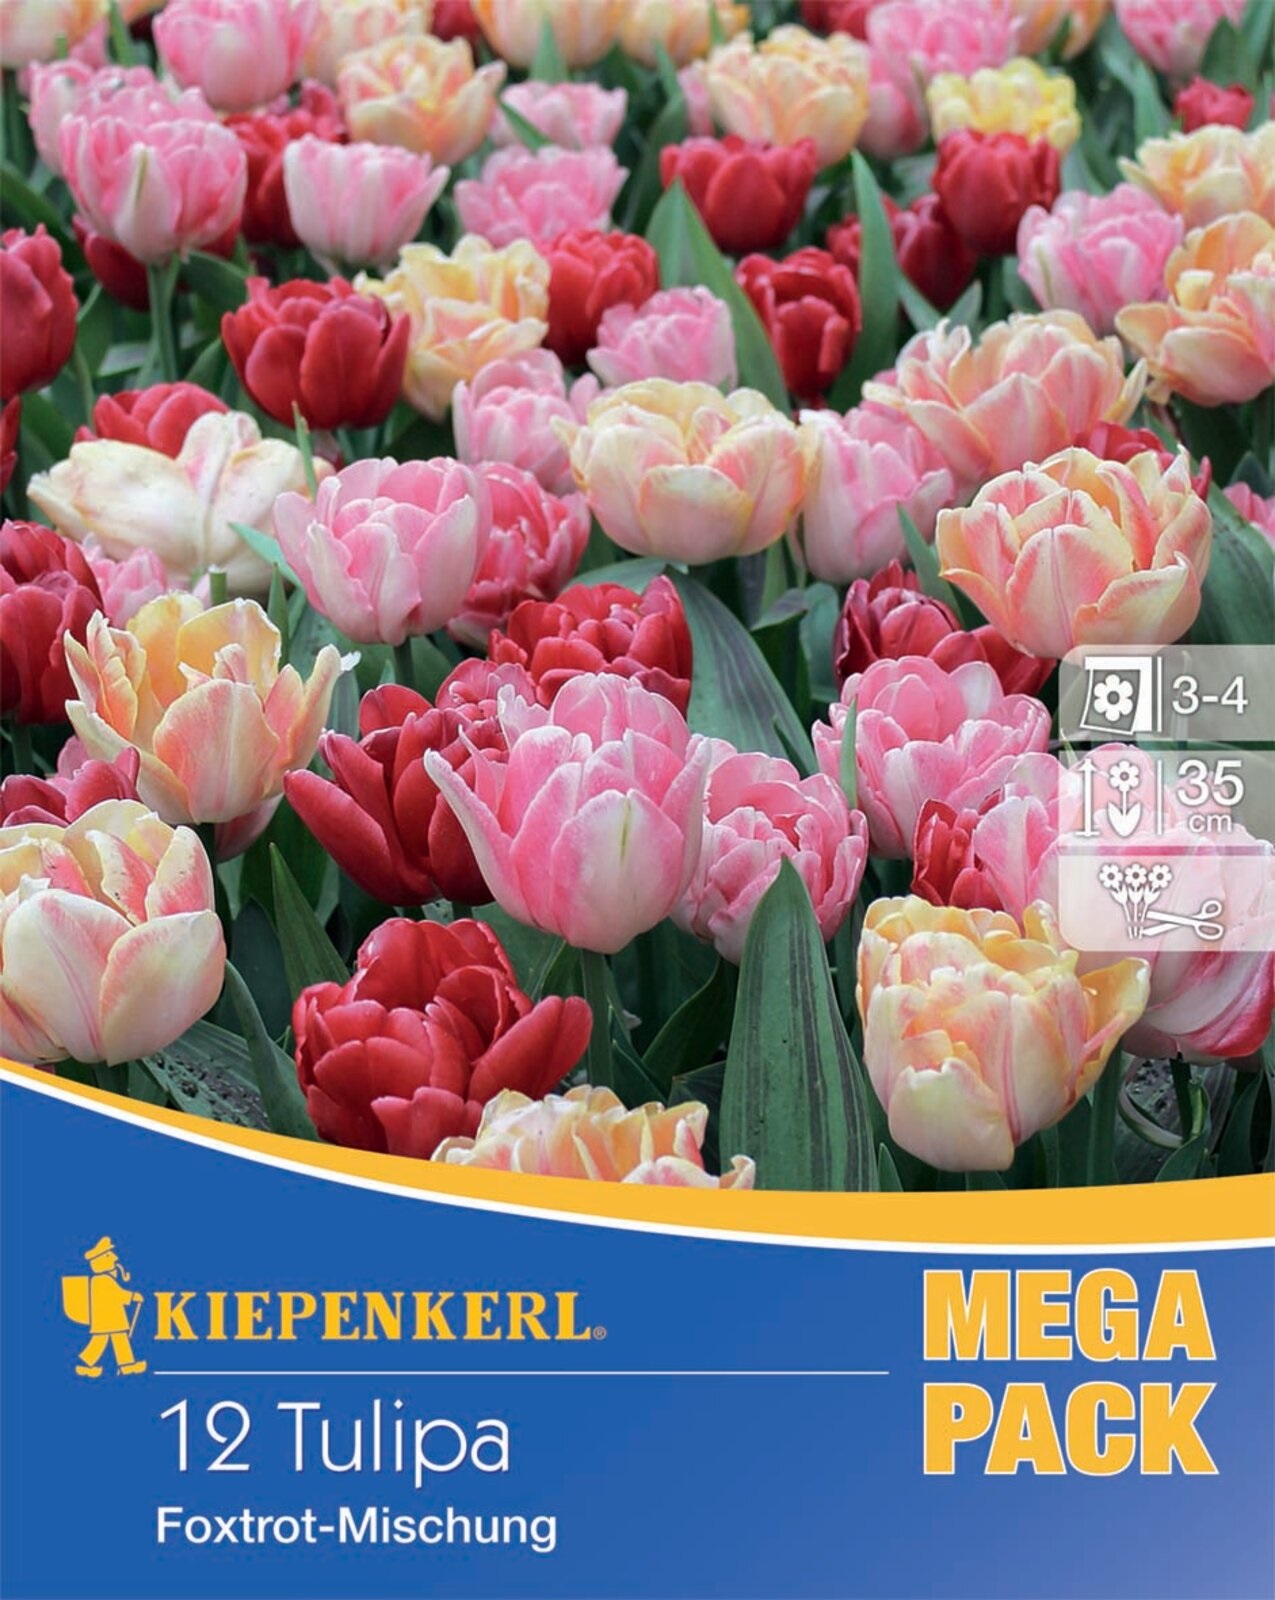 Virághagyma Tulipán Foxtrot-Mix Mega Pack 12 db Kiepenkerl